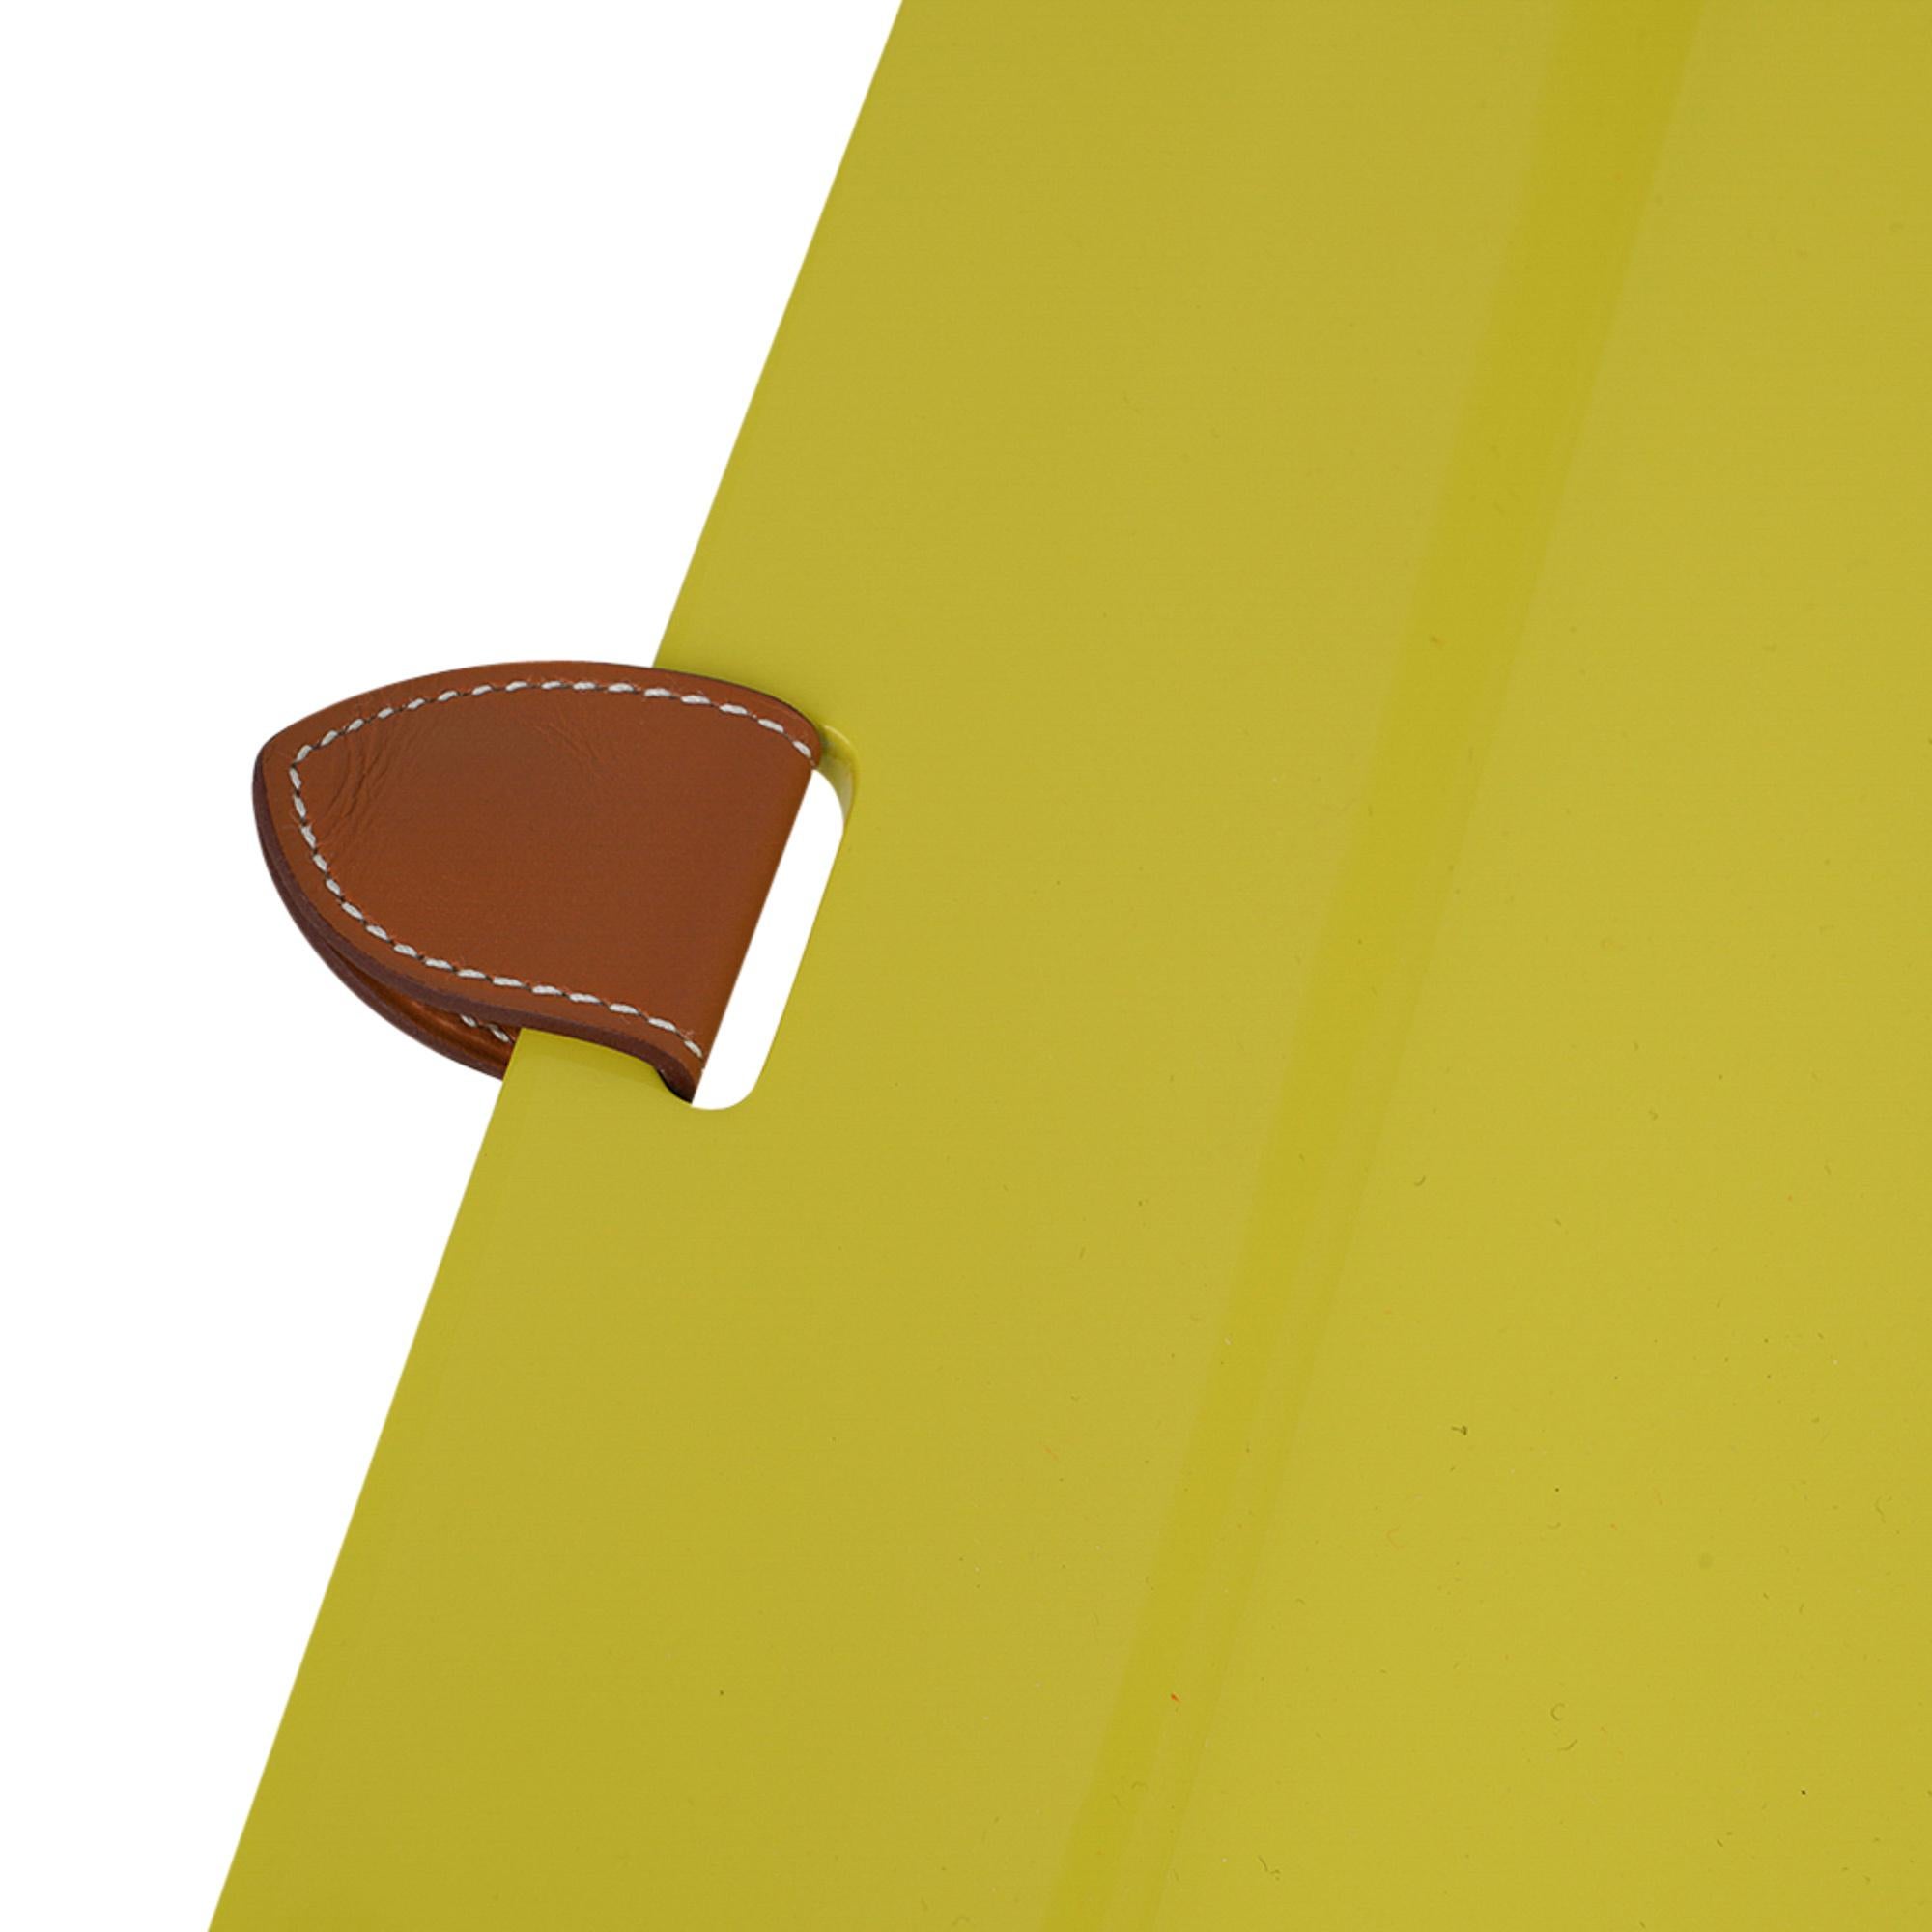 Mightychic bietet ein Hermes Chamonix Chakor Plateaux GM Tablett.
Lackiertes Holz in der Farbe Lime.
Gefertigt aus Holz mit einer dicken Lackschicht.
Seitliche Lederlasche.
Schick, modern, Hermes!
NEU oder STORE FRESH
endverkauf

ABLAGE